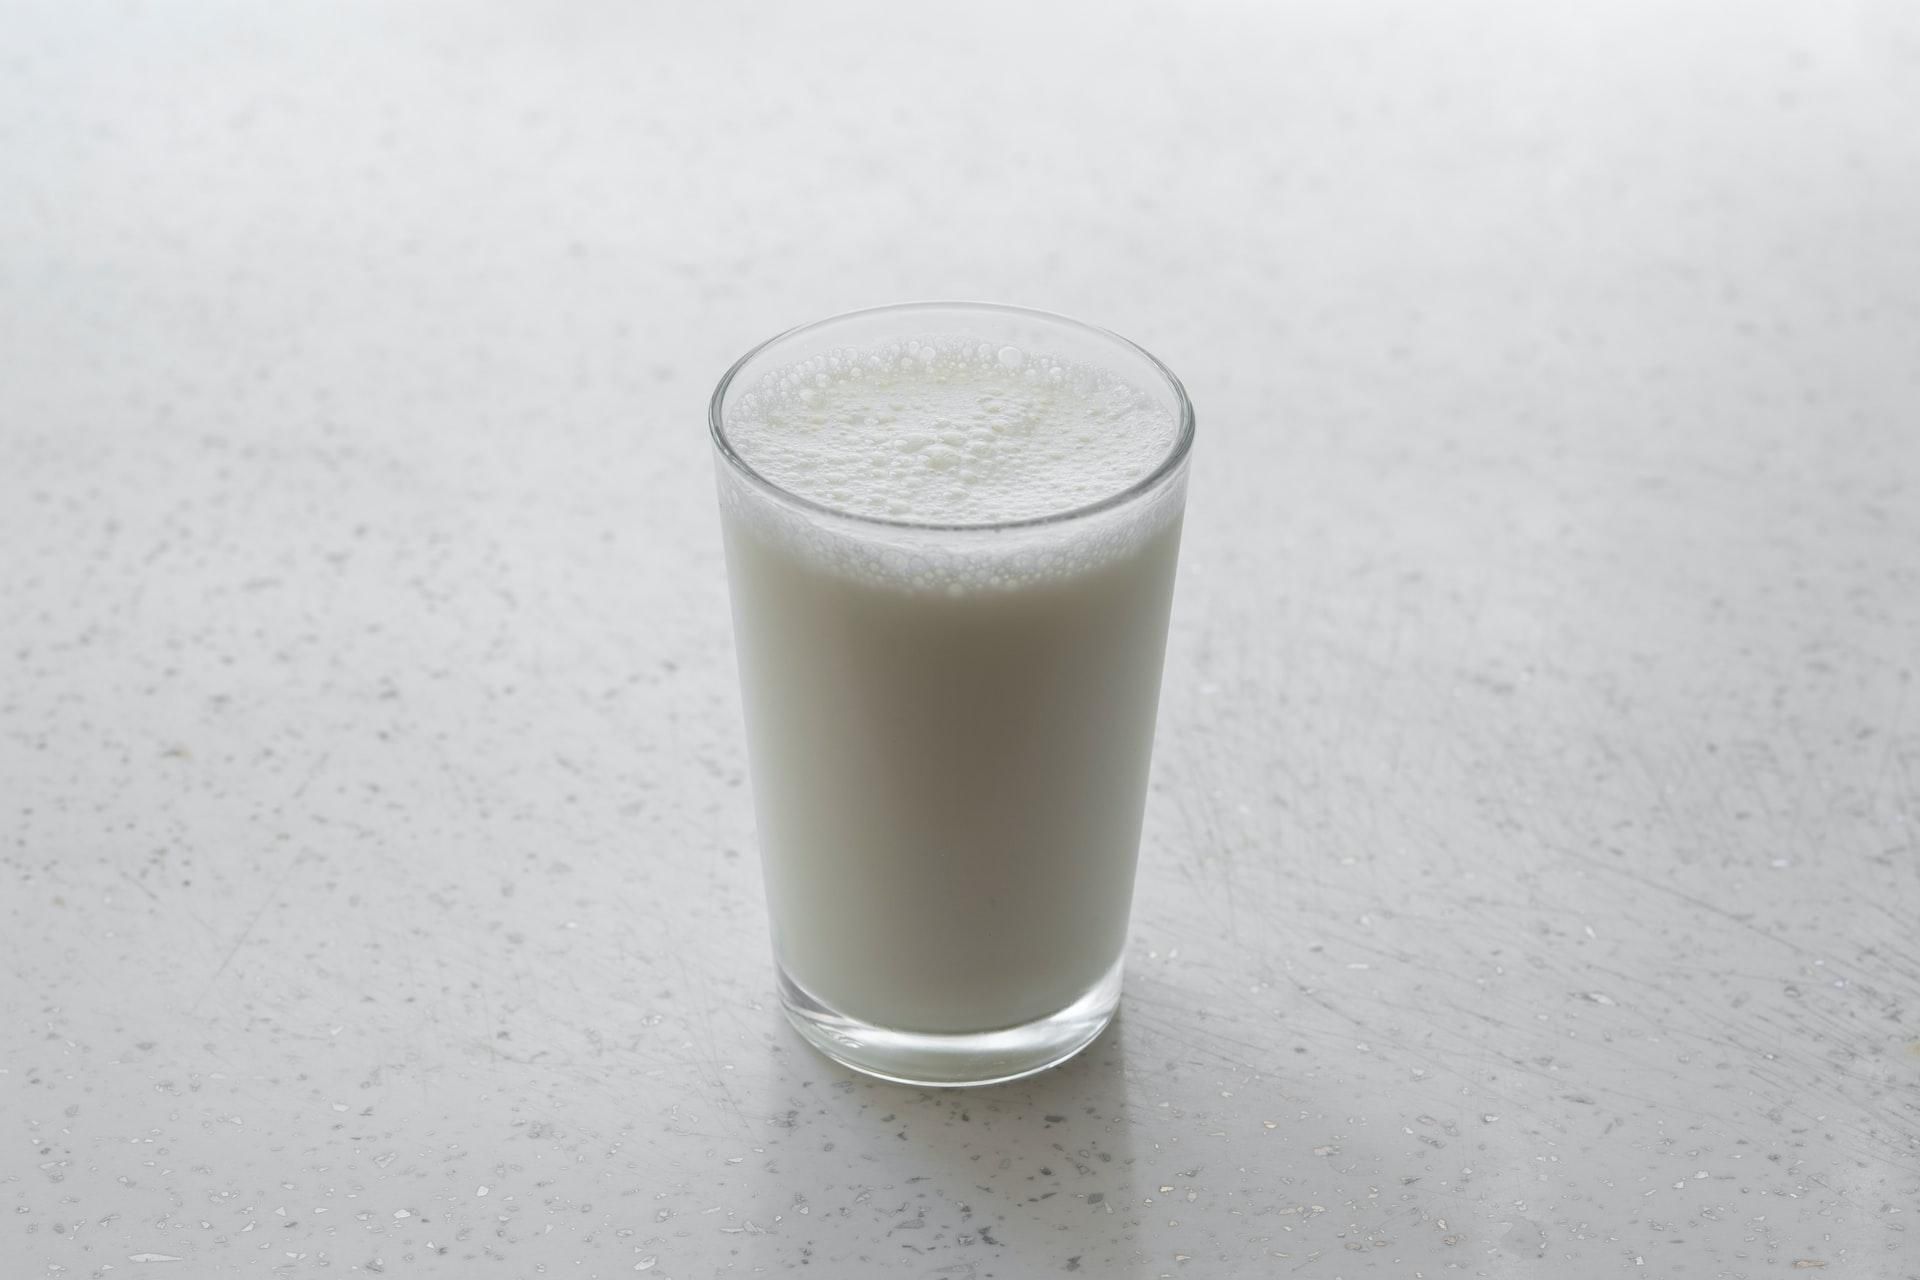 В США получили грудное молоко из искусственных клеток